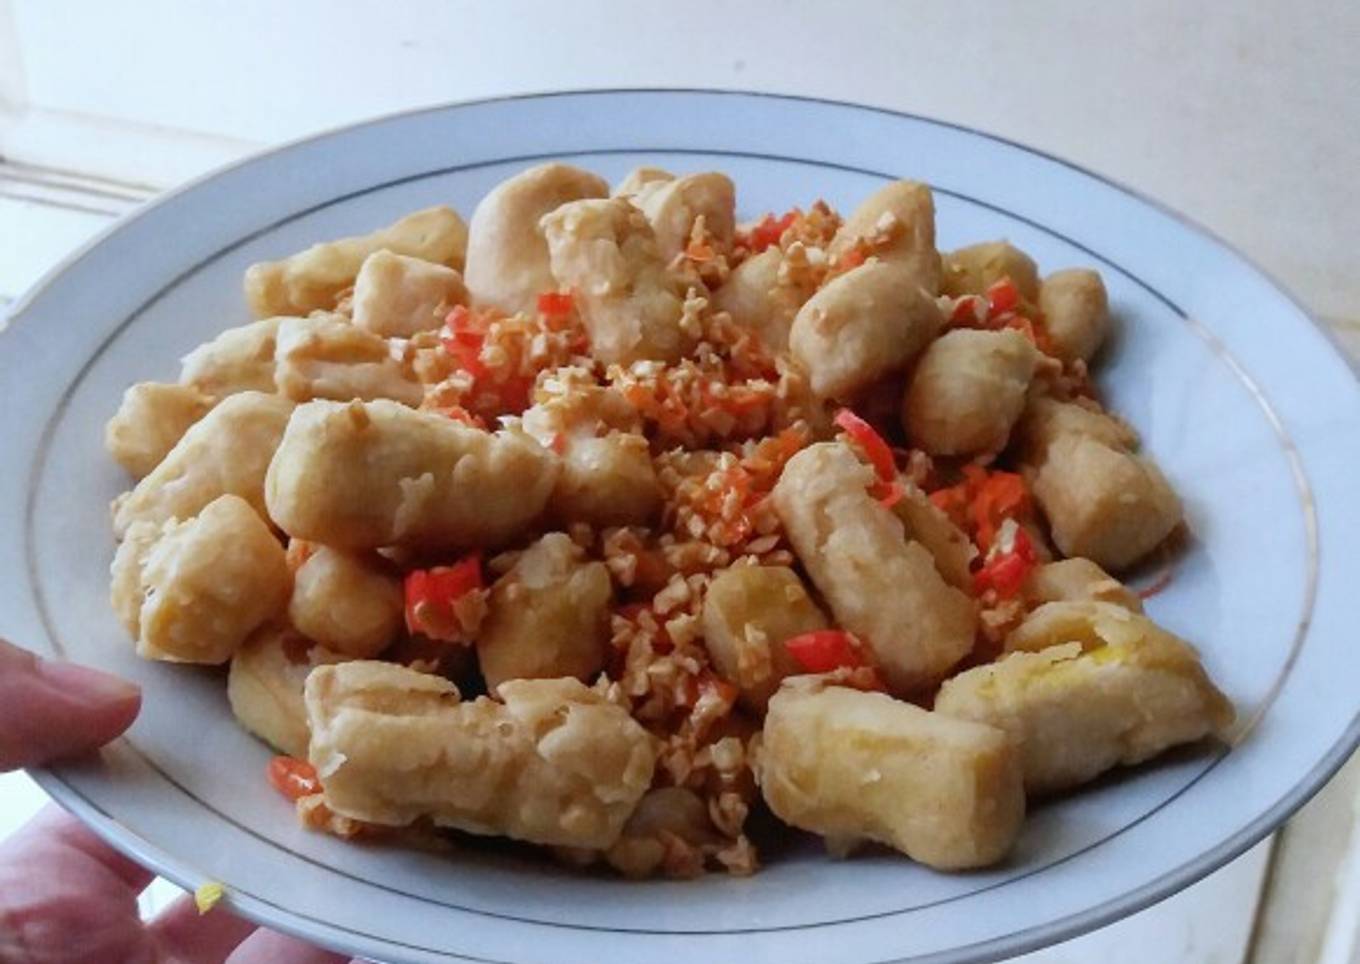 Tahu Cabai Garam / Tofu With Spicy Garlic and Chilli